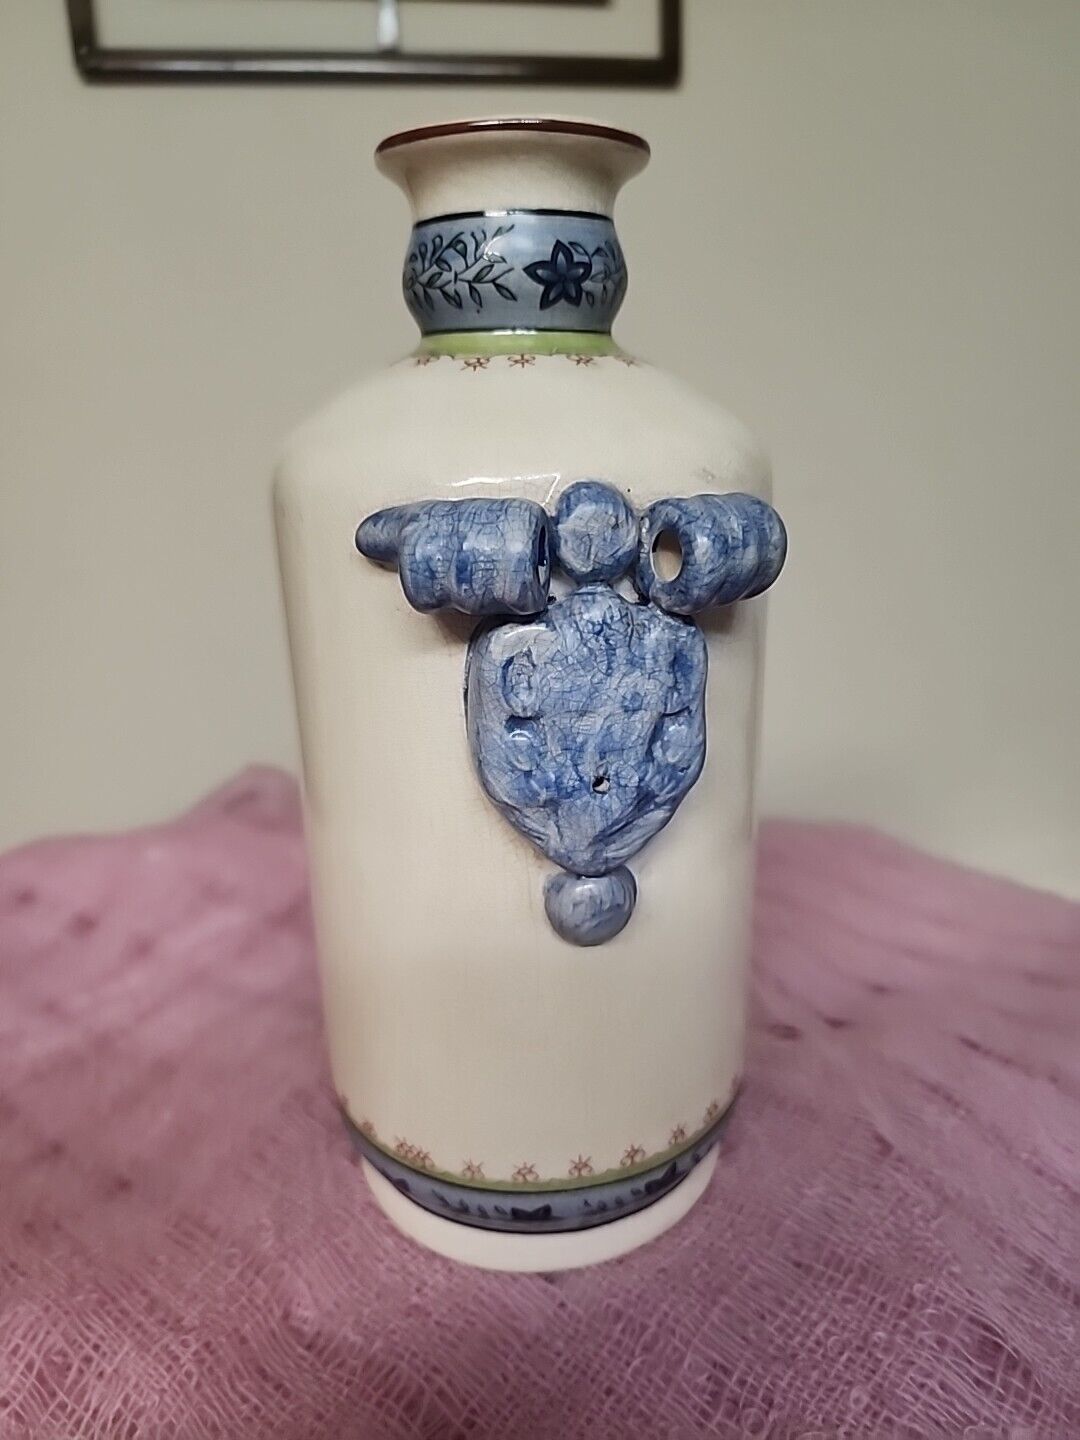 VINTAGE GORGEOUS Chinese Glazed Porcelain Floral Jar/Vase with Ornate Handles